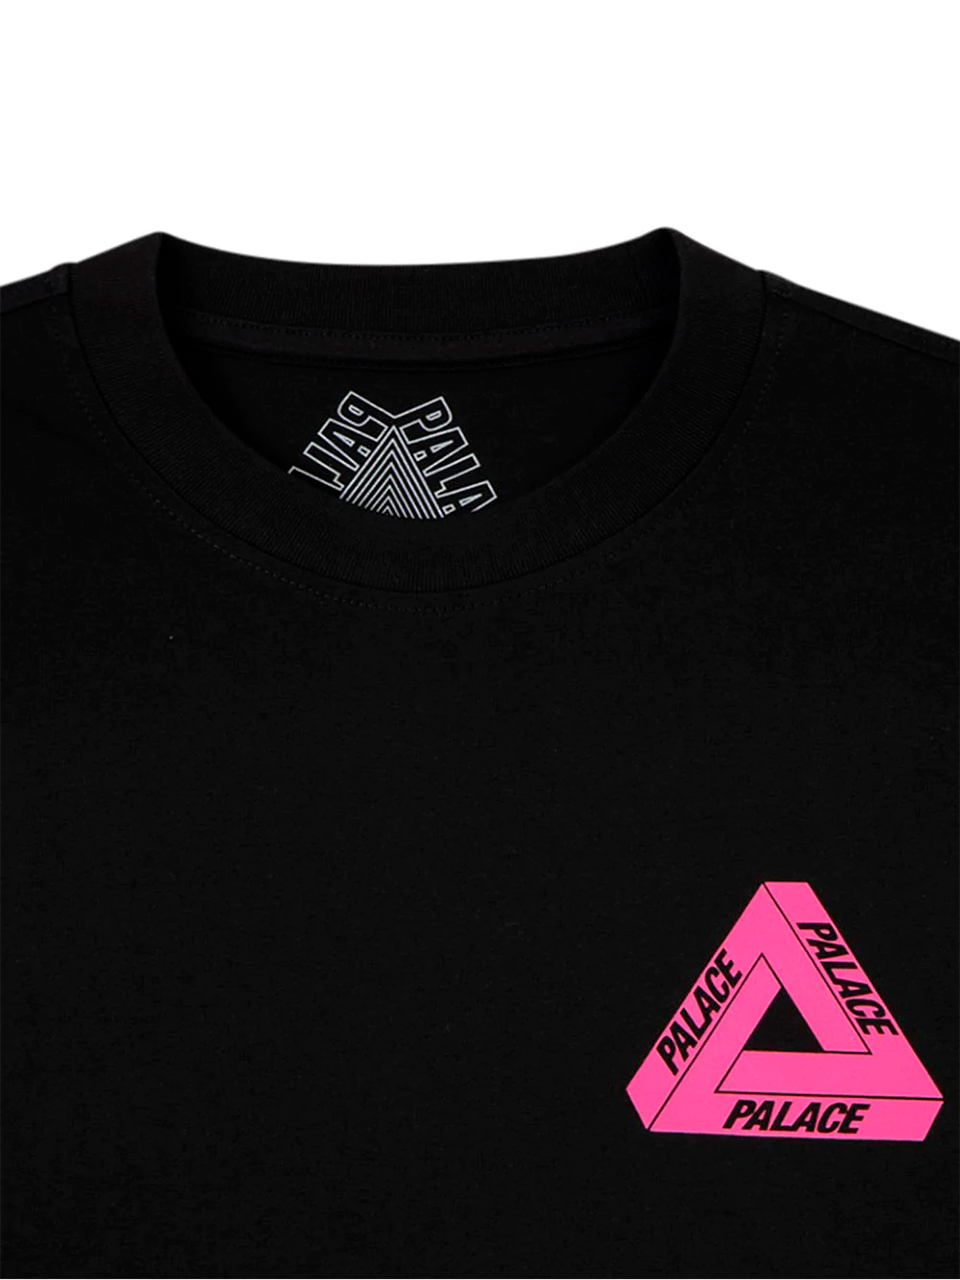 Imagem de: Camiseta Palace Preta Tri-To-Help Logo Rosa